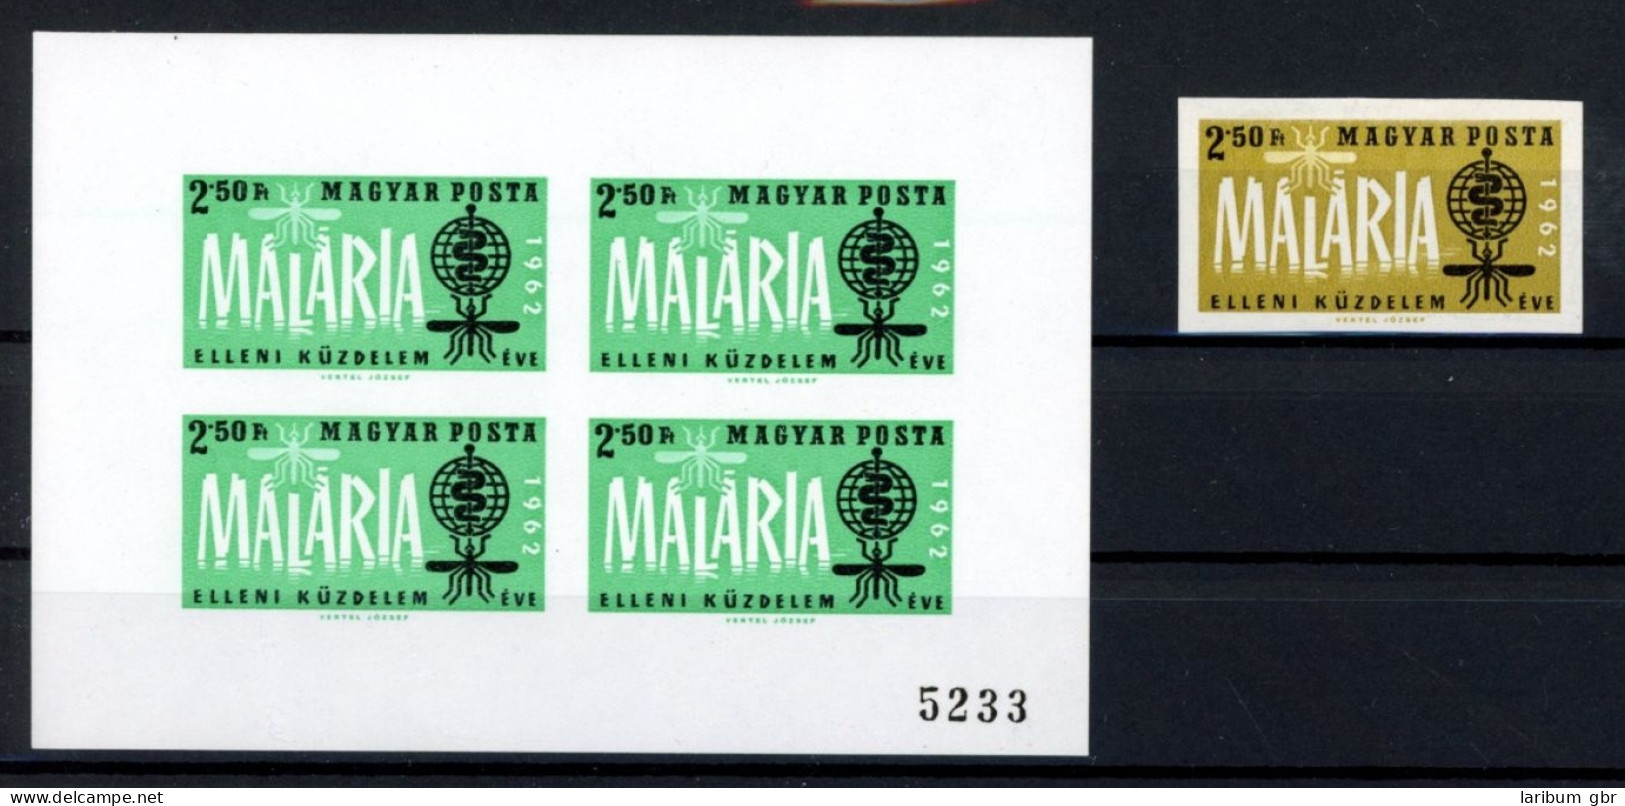 Uganda 1842 B, Block 35 B Postfrisch Malaria #JT876 - Uganda (1962-...)